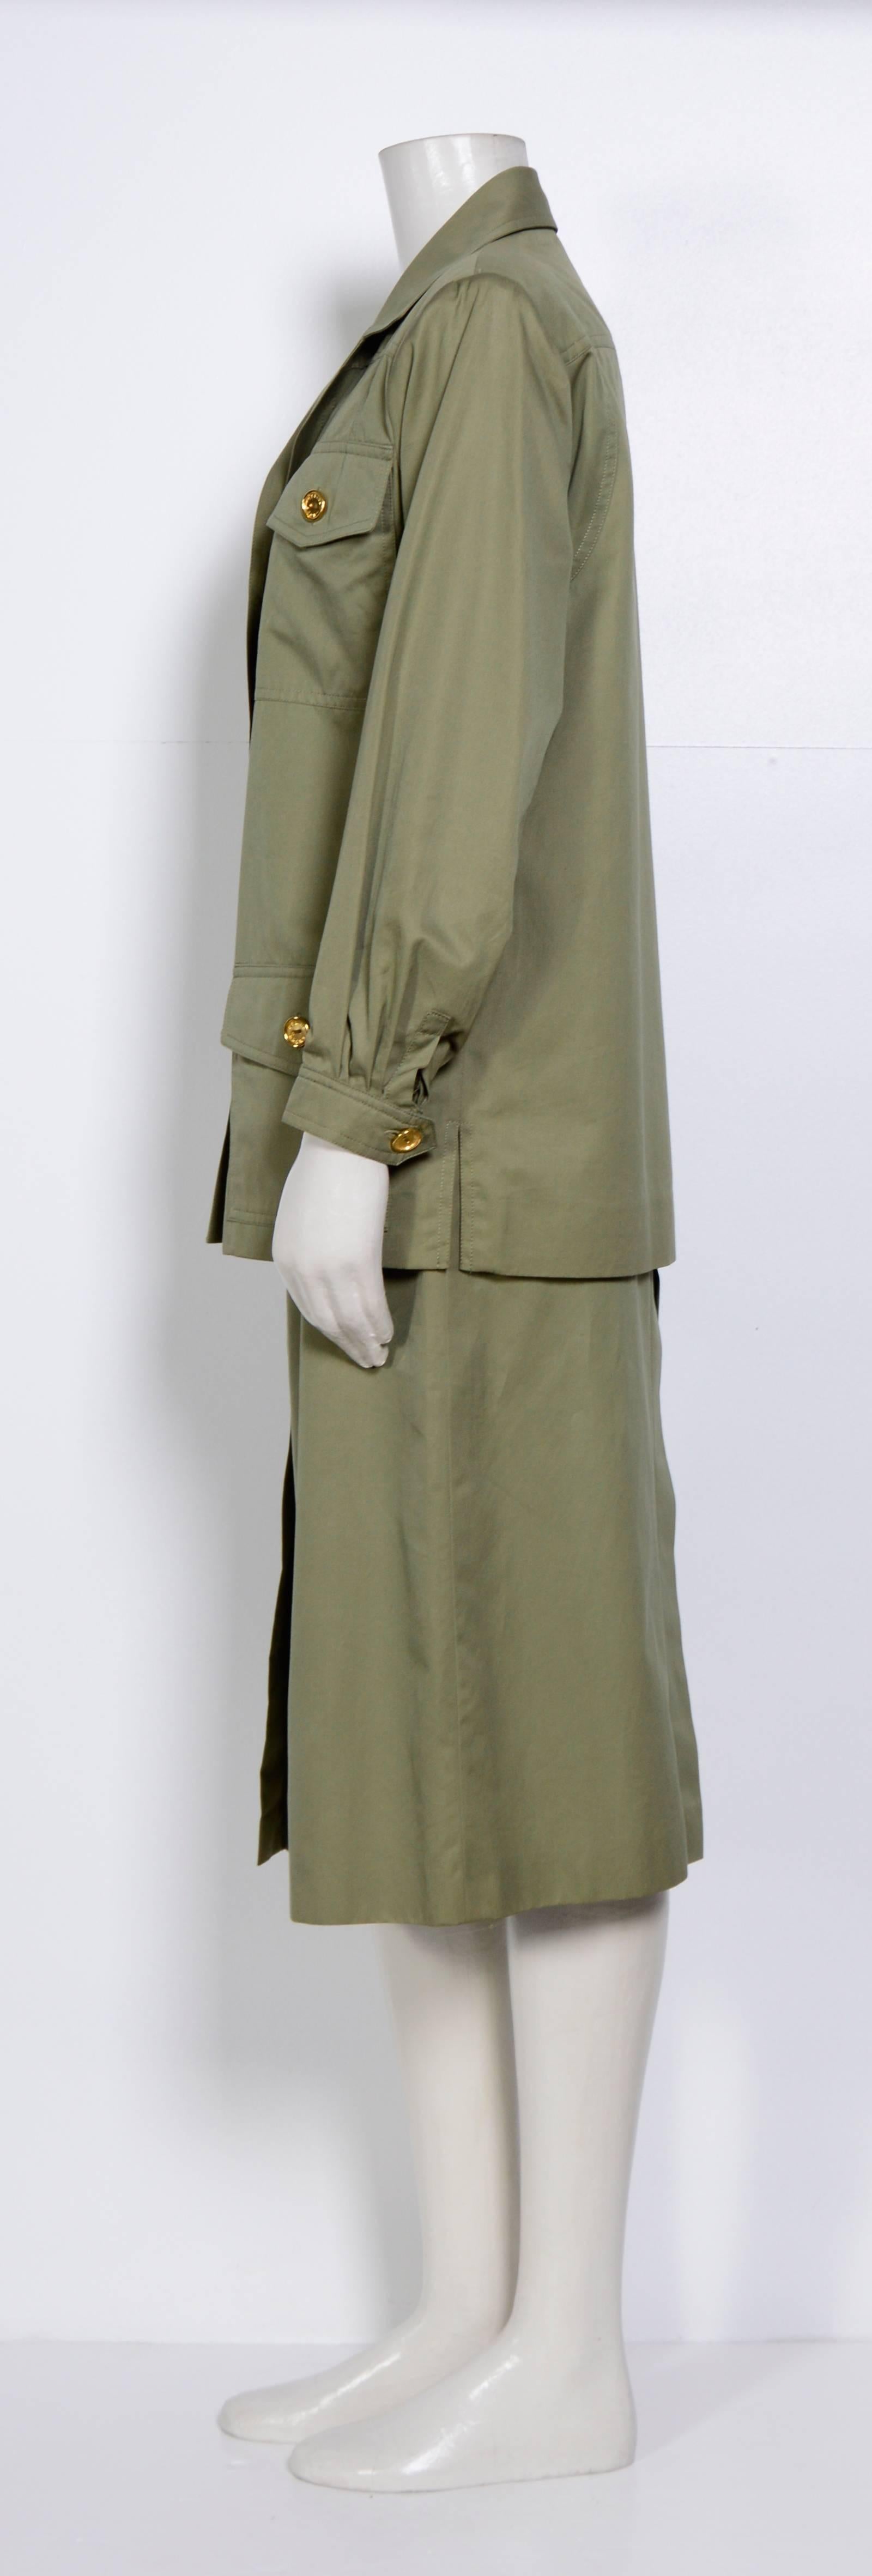 1970s cotton khaki safari jacket & jupe culotte by Celine.
Excellent condition. Size 38
Measurements taken flat:
Jacket: Sh to SH 17inch/43cm - Ua to Ua 19,5inch/50cm - Waist 20inch/51cm - Sleeve 22inch/56cm
Skirt: Waist 13inch/33cm - Hip